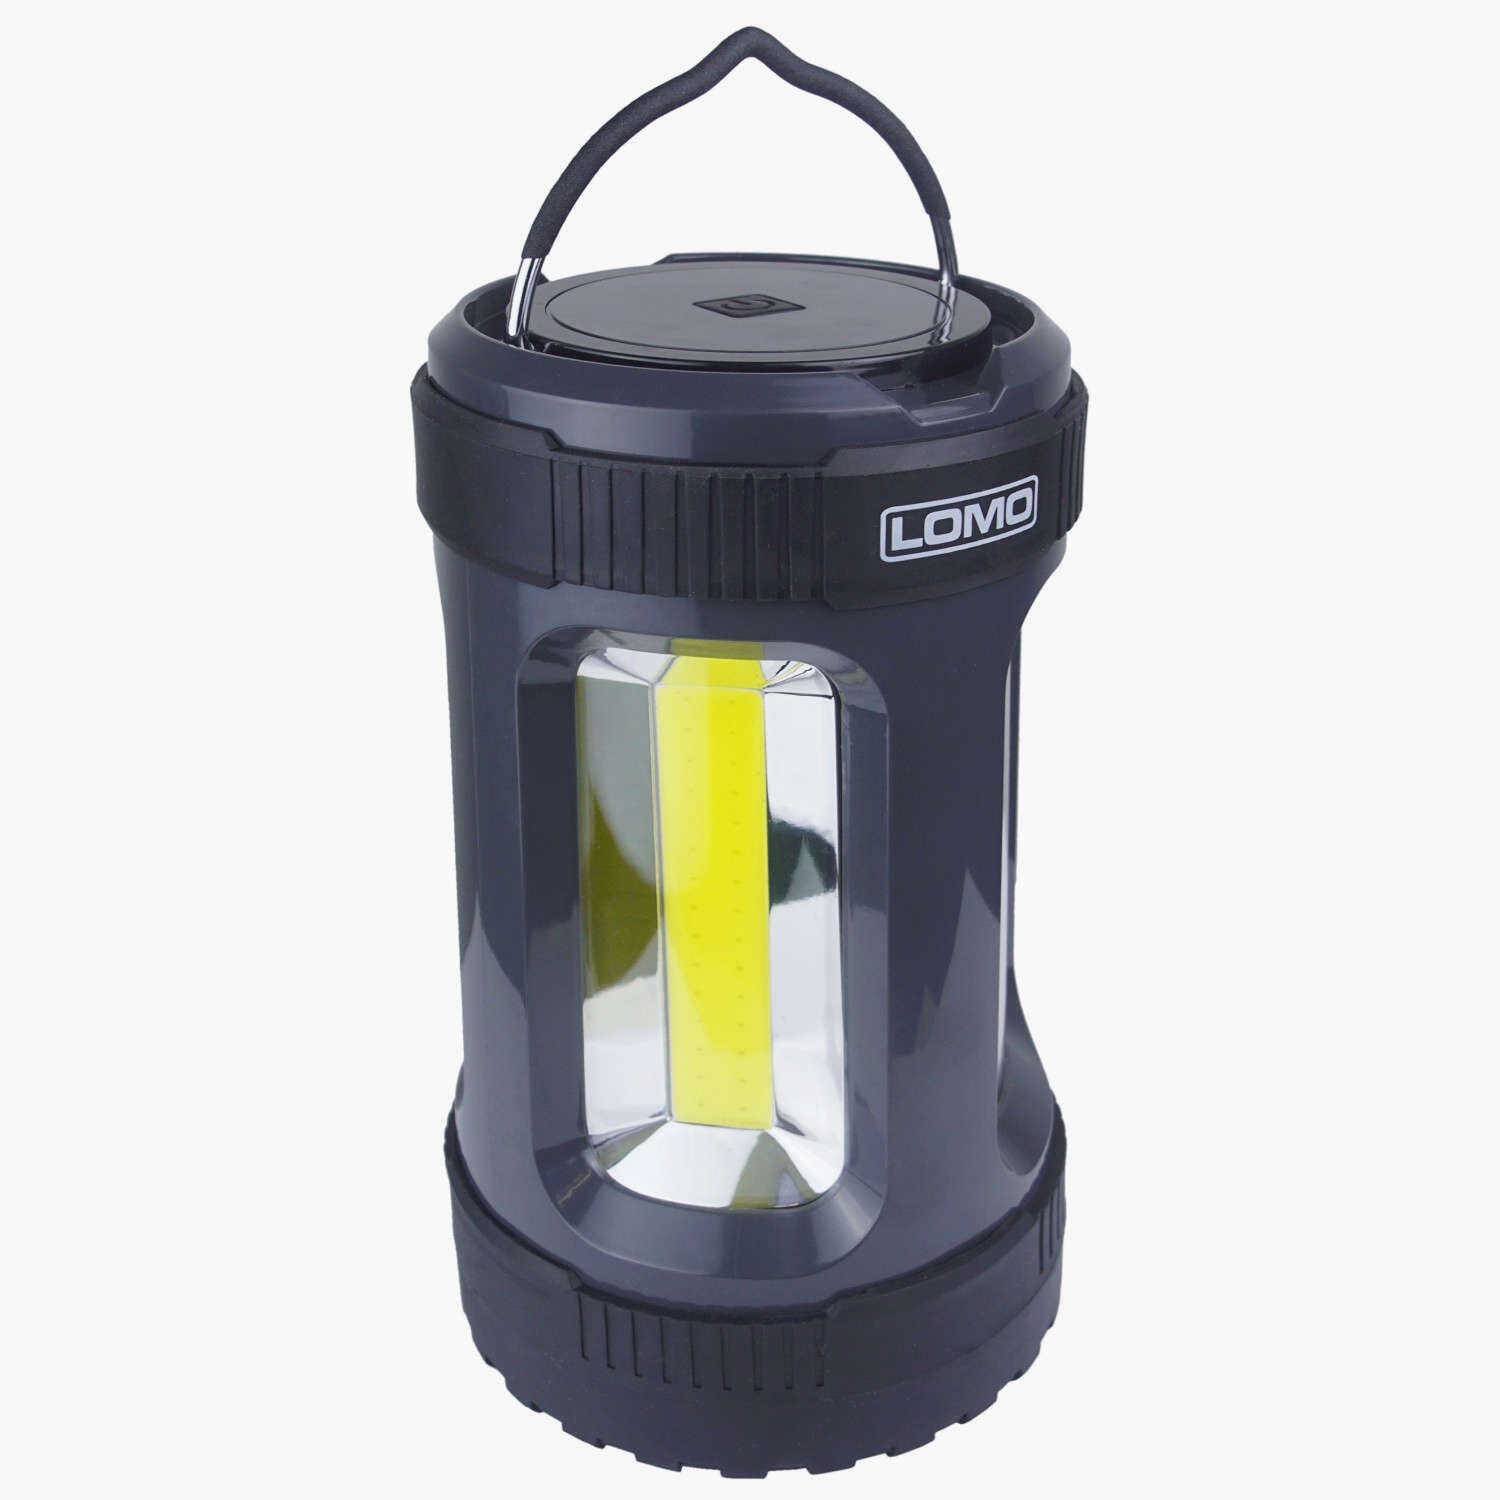 Lomo LED Camping Lantern - 1000 Lumens 1/8